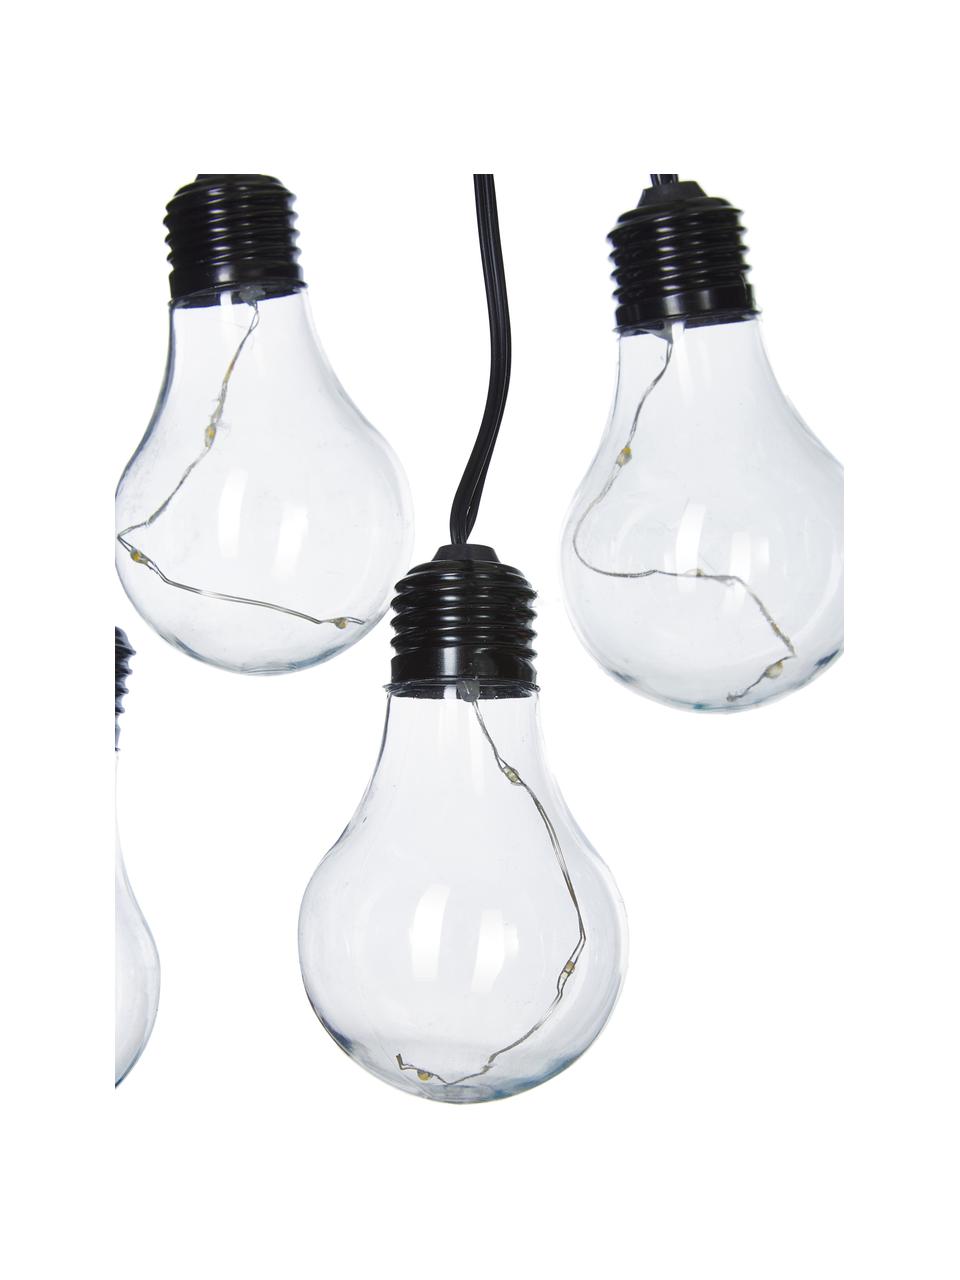 Girlanda świetlna LED Partytime, 800 cm i 10 lampionów, Czarny, transparentny, D 800 cm